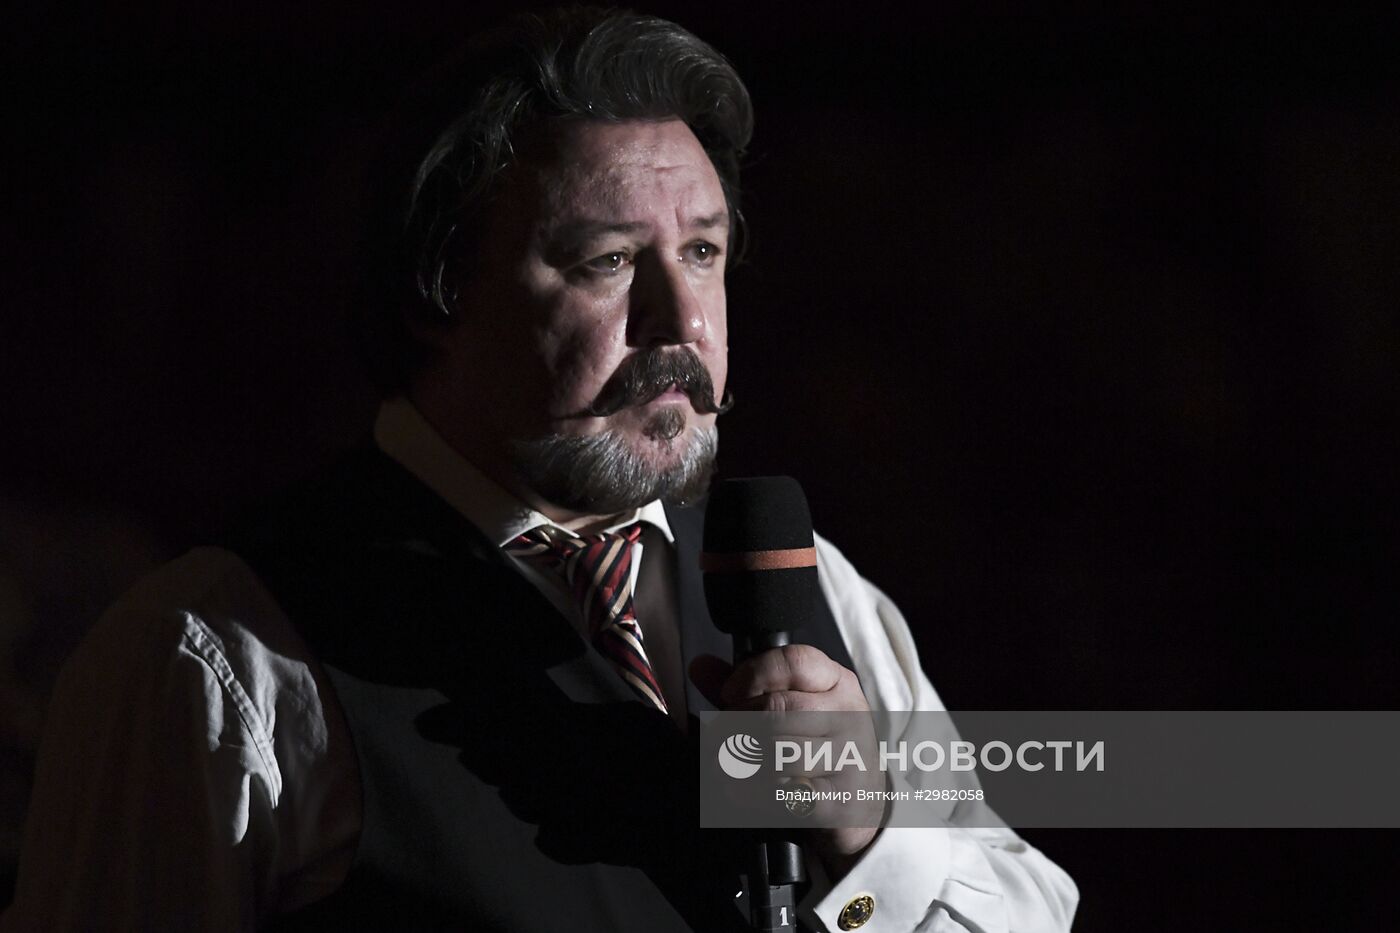 Юбилейный гала-концерт Госоркестра России и Госхора в Большом театре